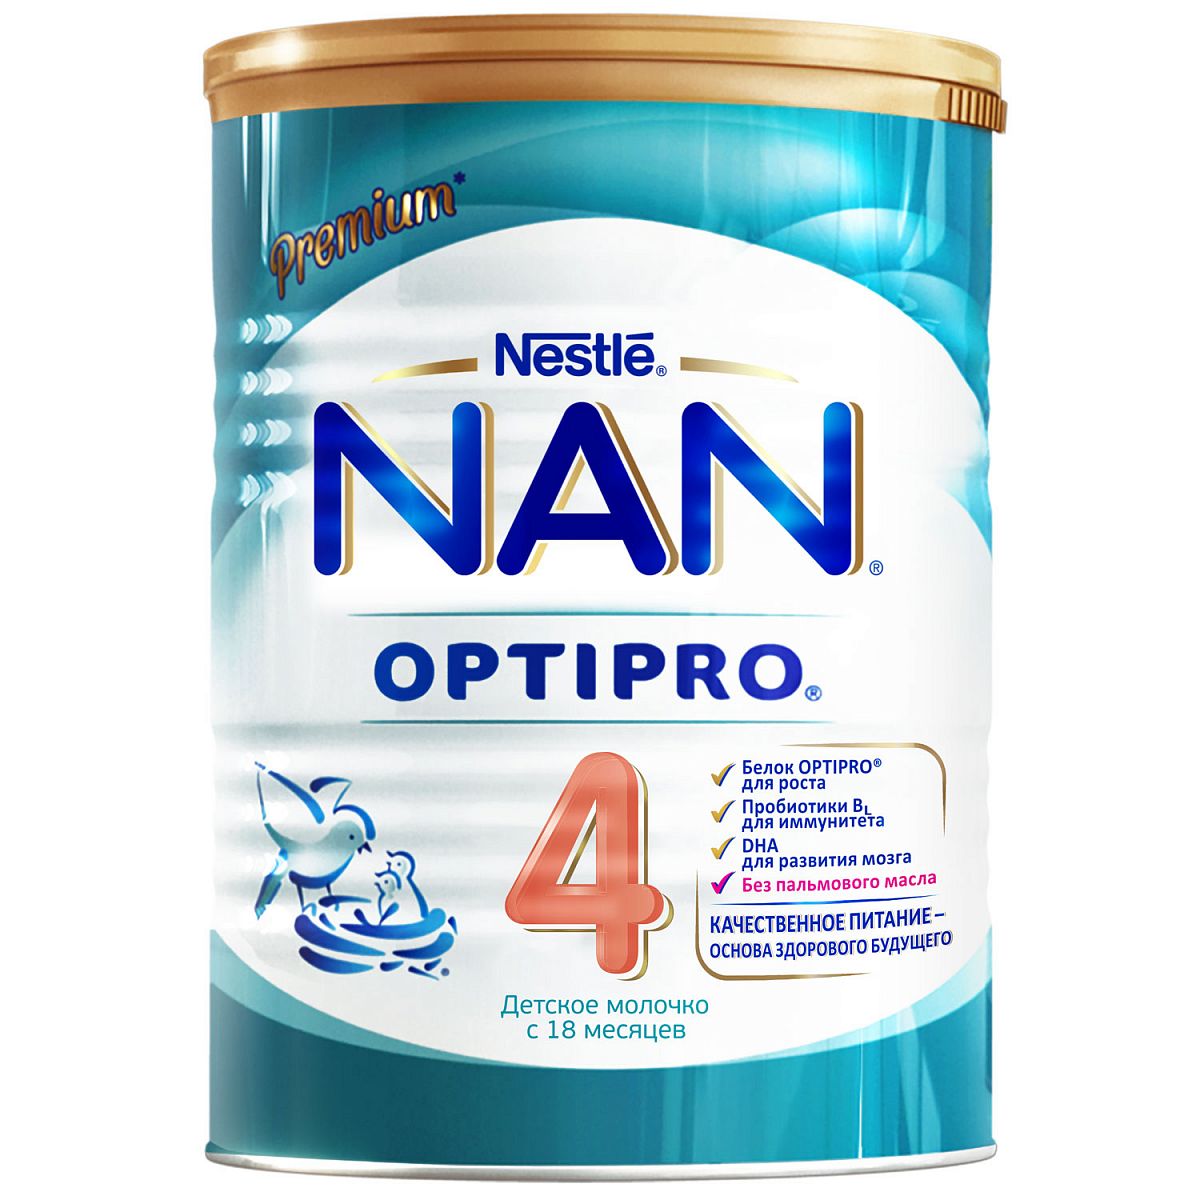 Детское молочко NAN 4 Optipro c 18 месяцев 400 г оливковое масло детское fleur alpine extra virgin с 6 месяцев 30 сашетов по 10 мл